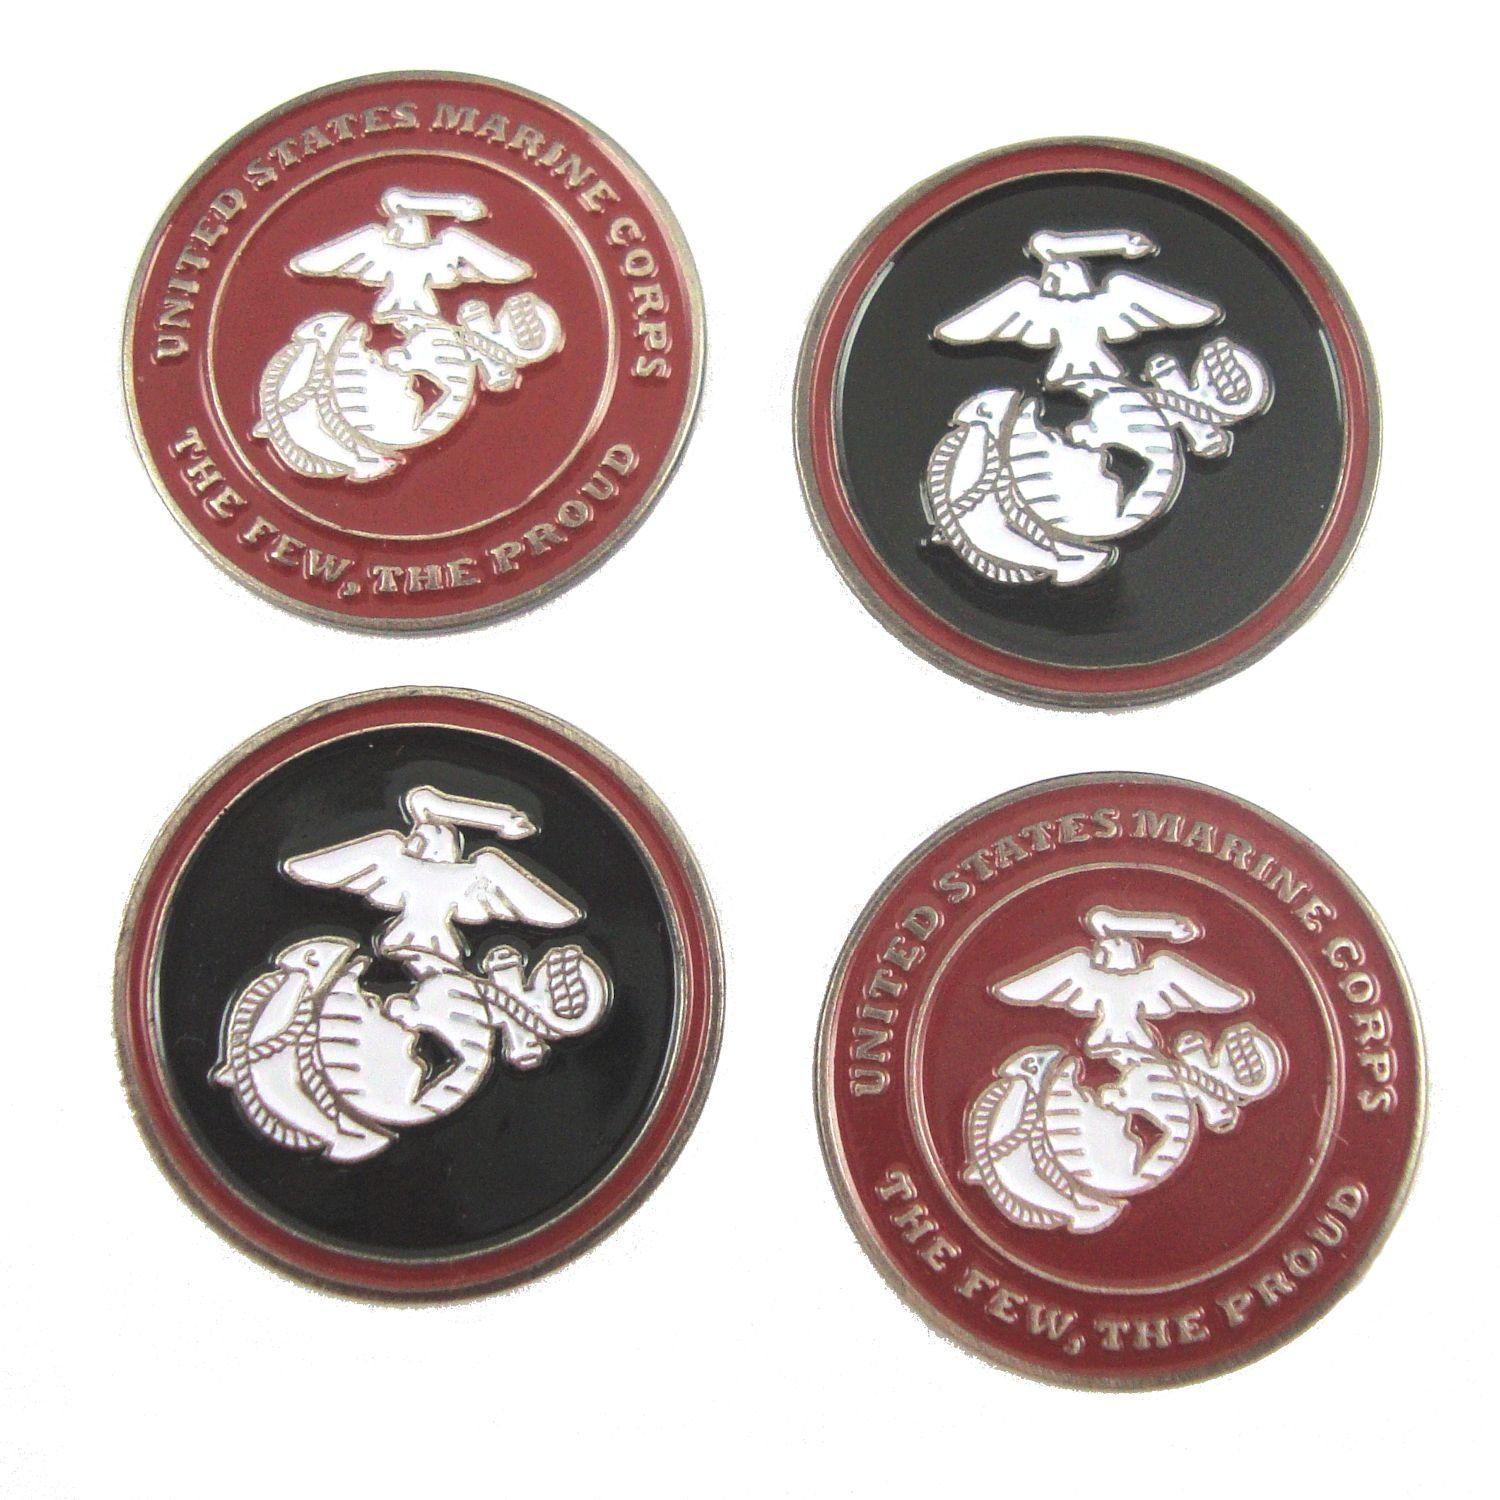 US Marines Logo - Amazon.com : U.S. Marines Double Sided USMC logo Golf Ball Marker